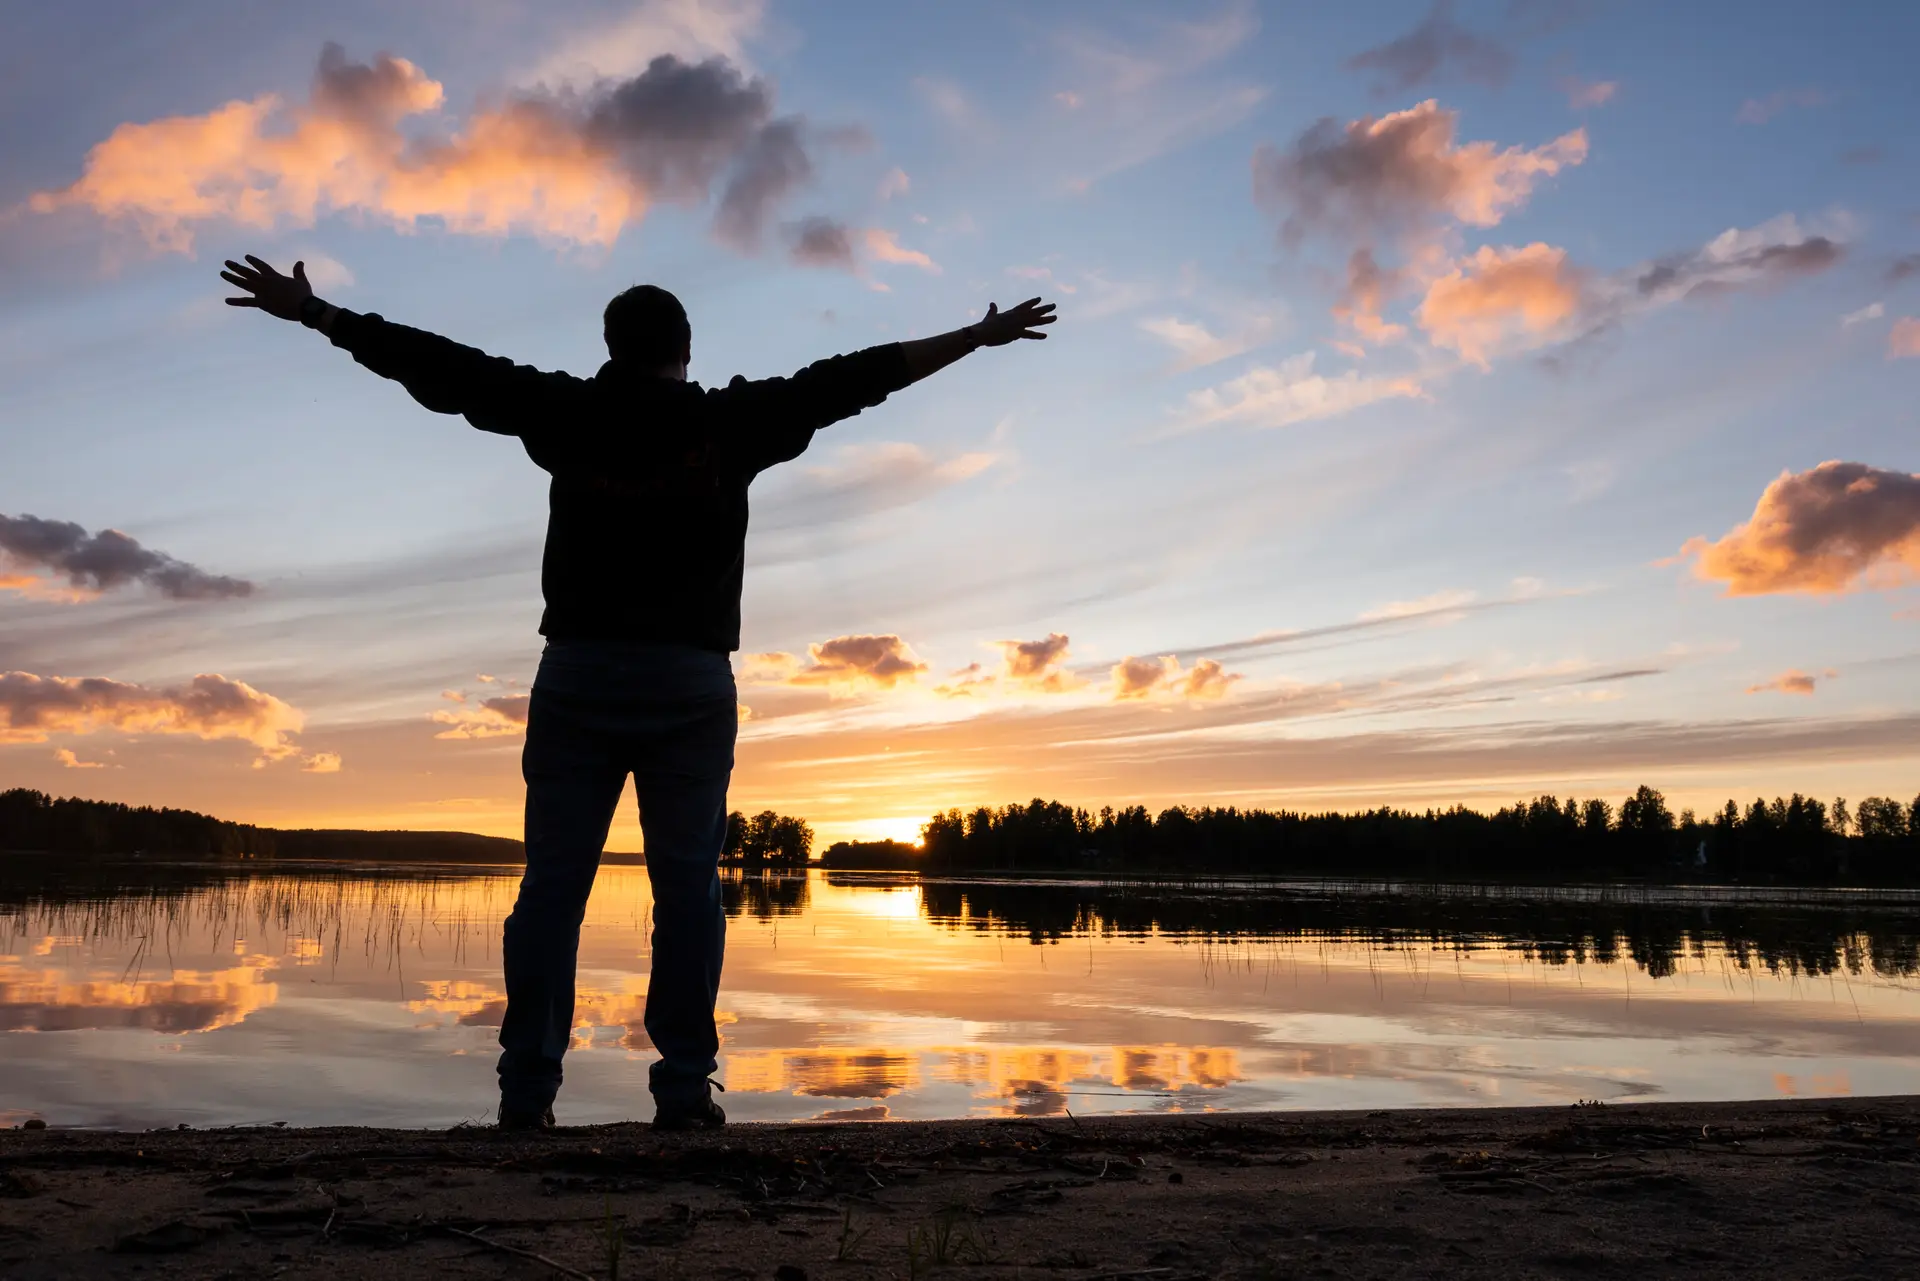 Junge Menschen sind unzufriedener und Finnen an der Spitze: Das zeigt der World Happiness Report